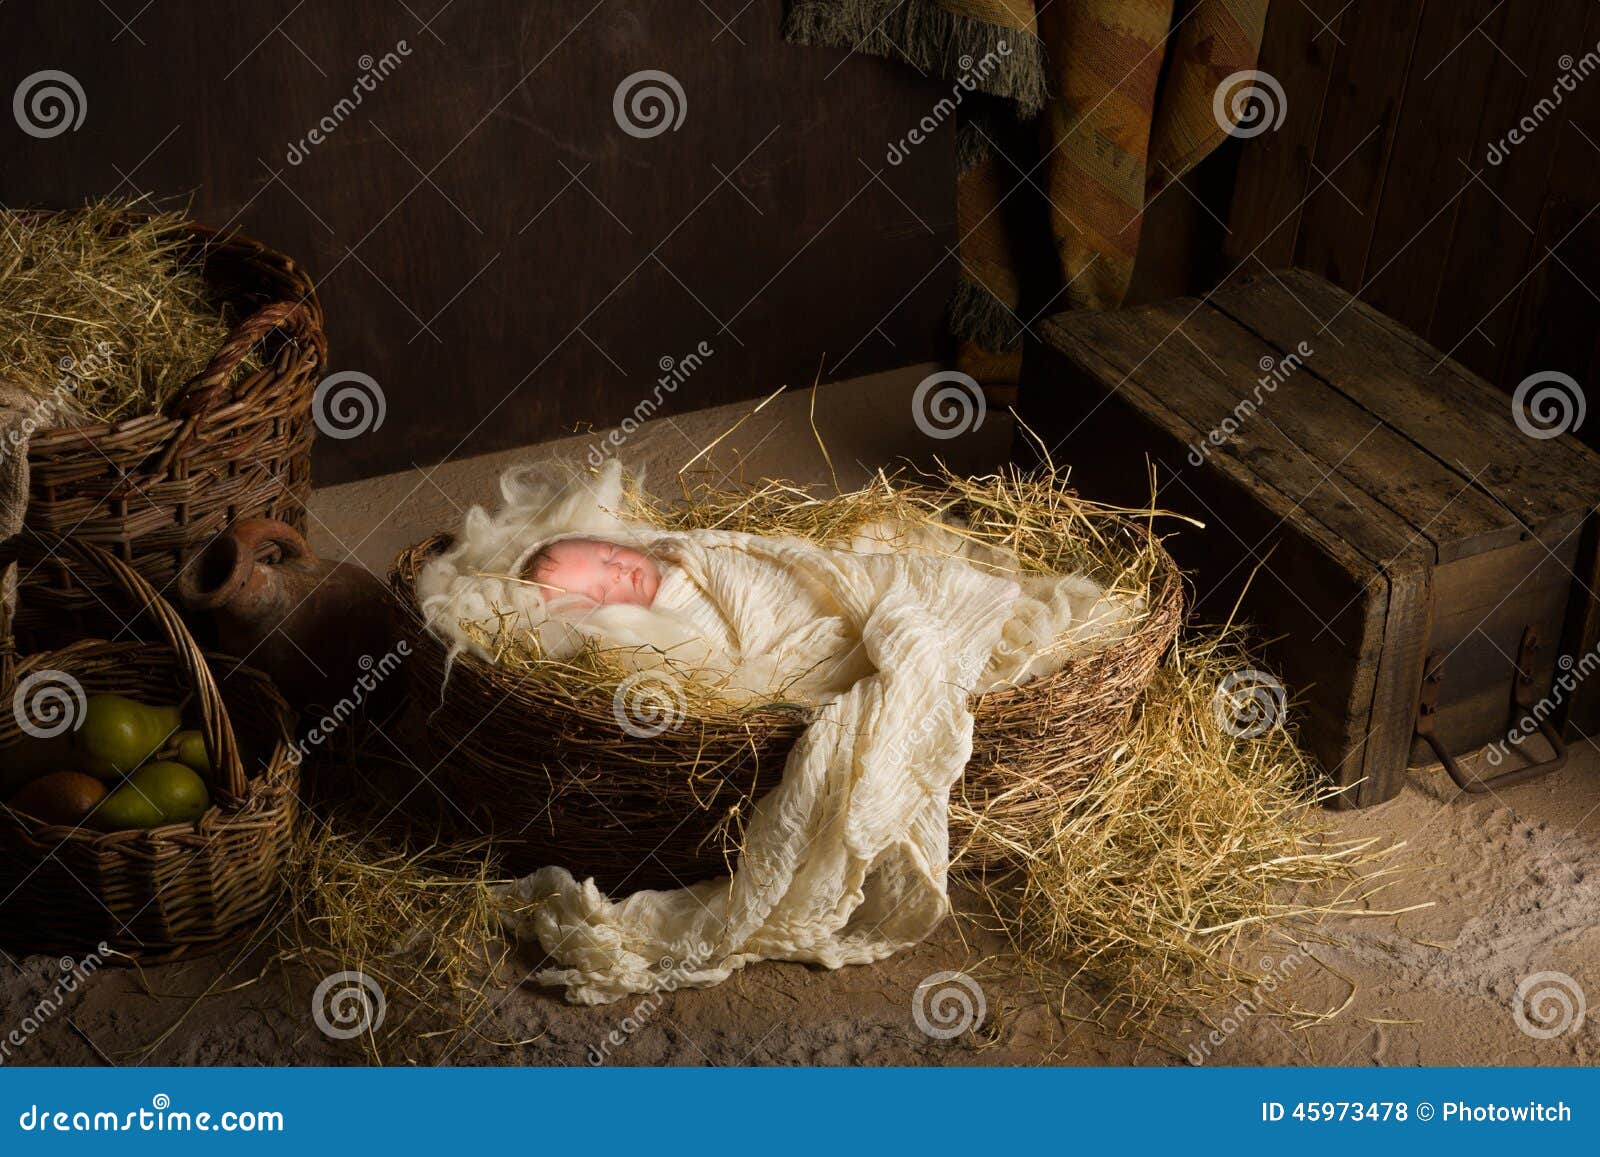 baby doll in nativity scene